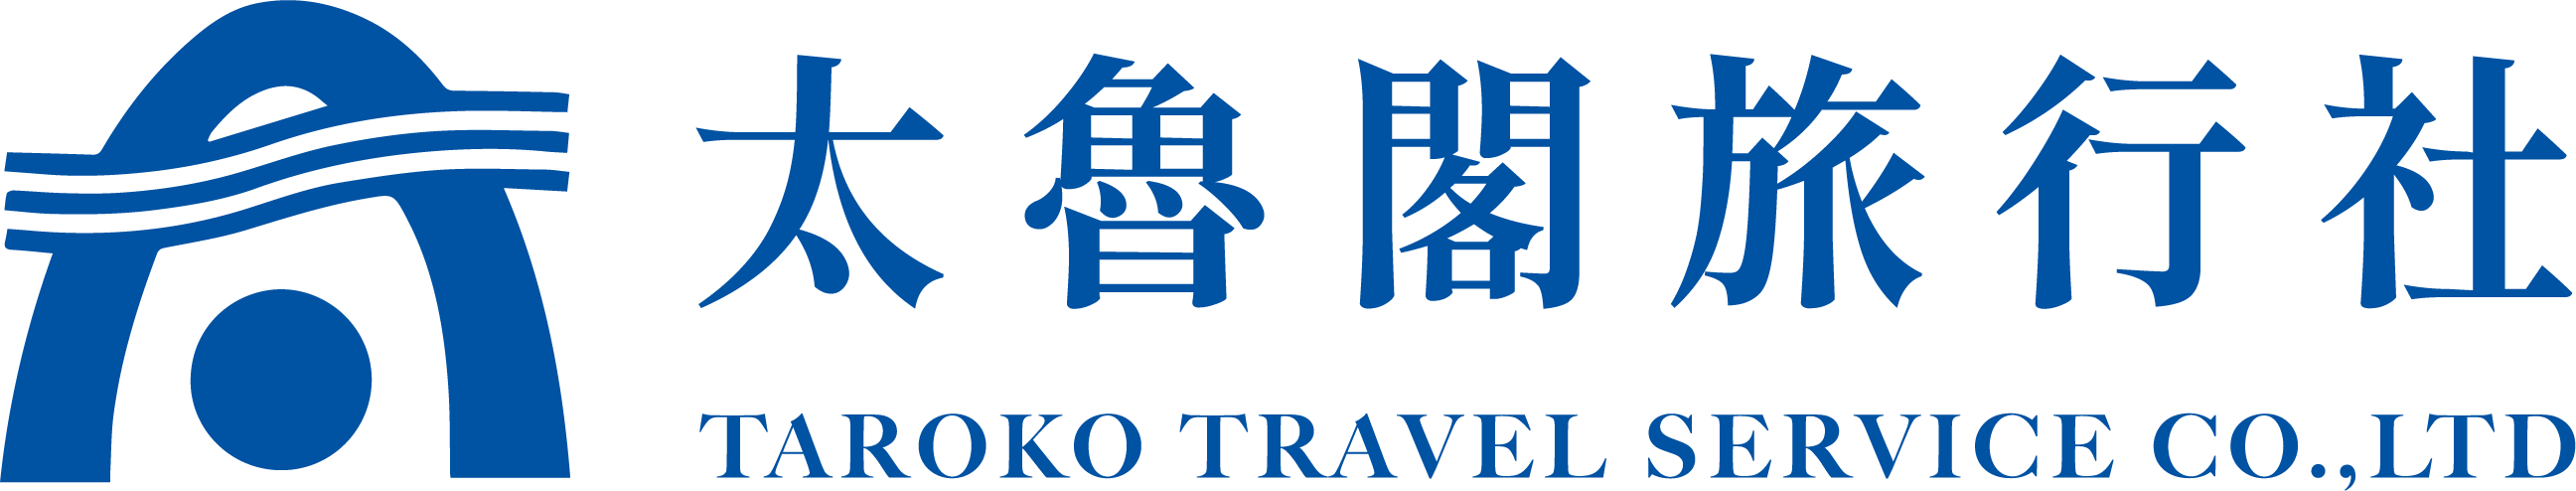 太魯閣旅行社成立於1965年，服務台灣旅客與商務旅行需求超過50年的甲種旅行社，專營護照、各式簽證代辦、中國自由行申請、中國商務人士來台等商務旅遊服務項目。